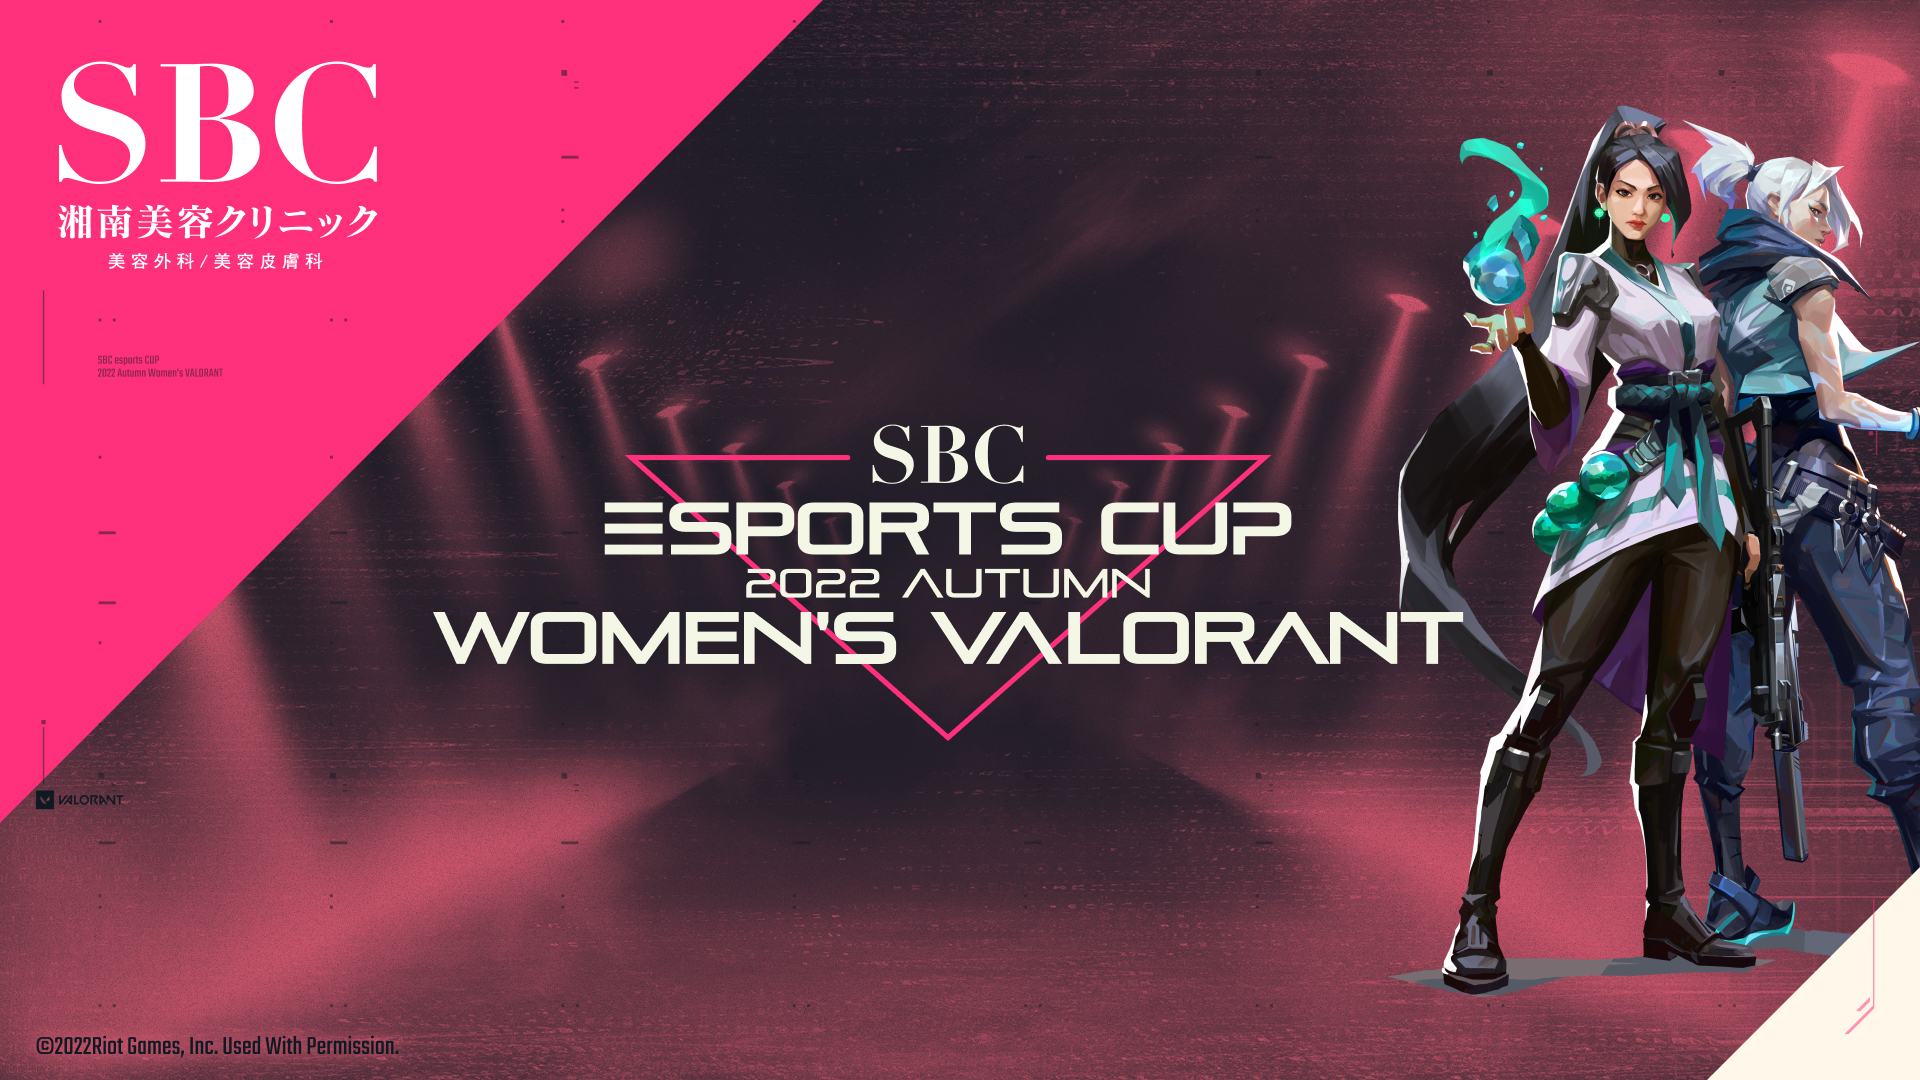 優勝賞金200万円をかけてVALORANT女性プレイヤーが競い合う「SBC esports CUP ～2022 Autumn Women’s VALORANT～」開催決定！